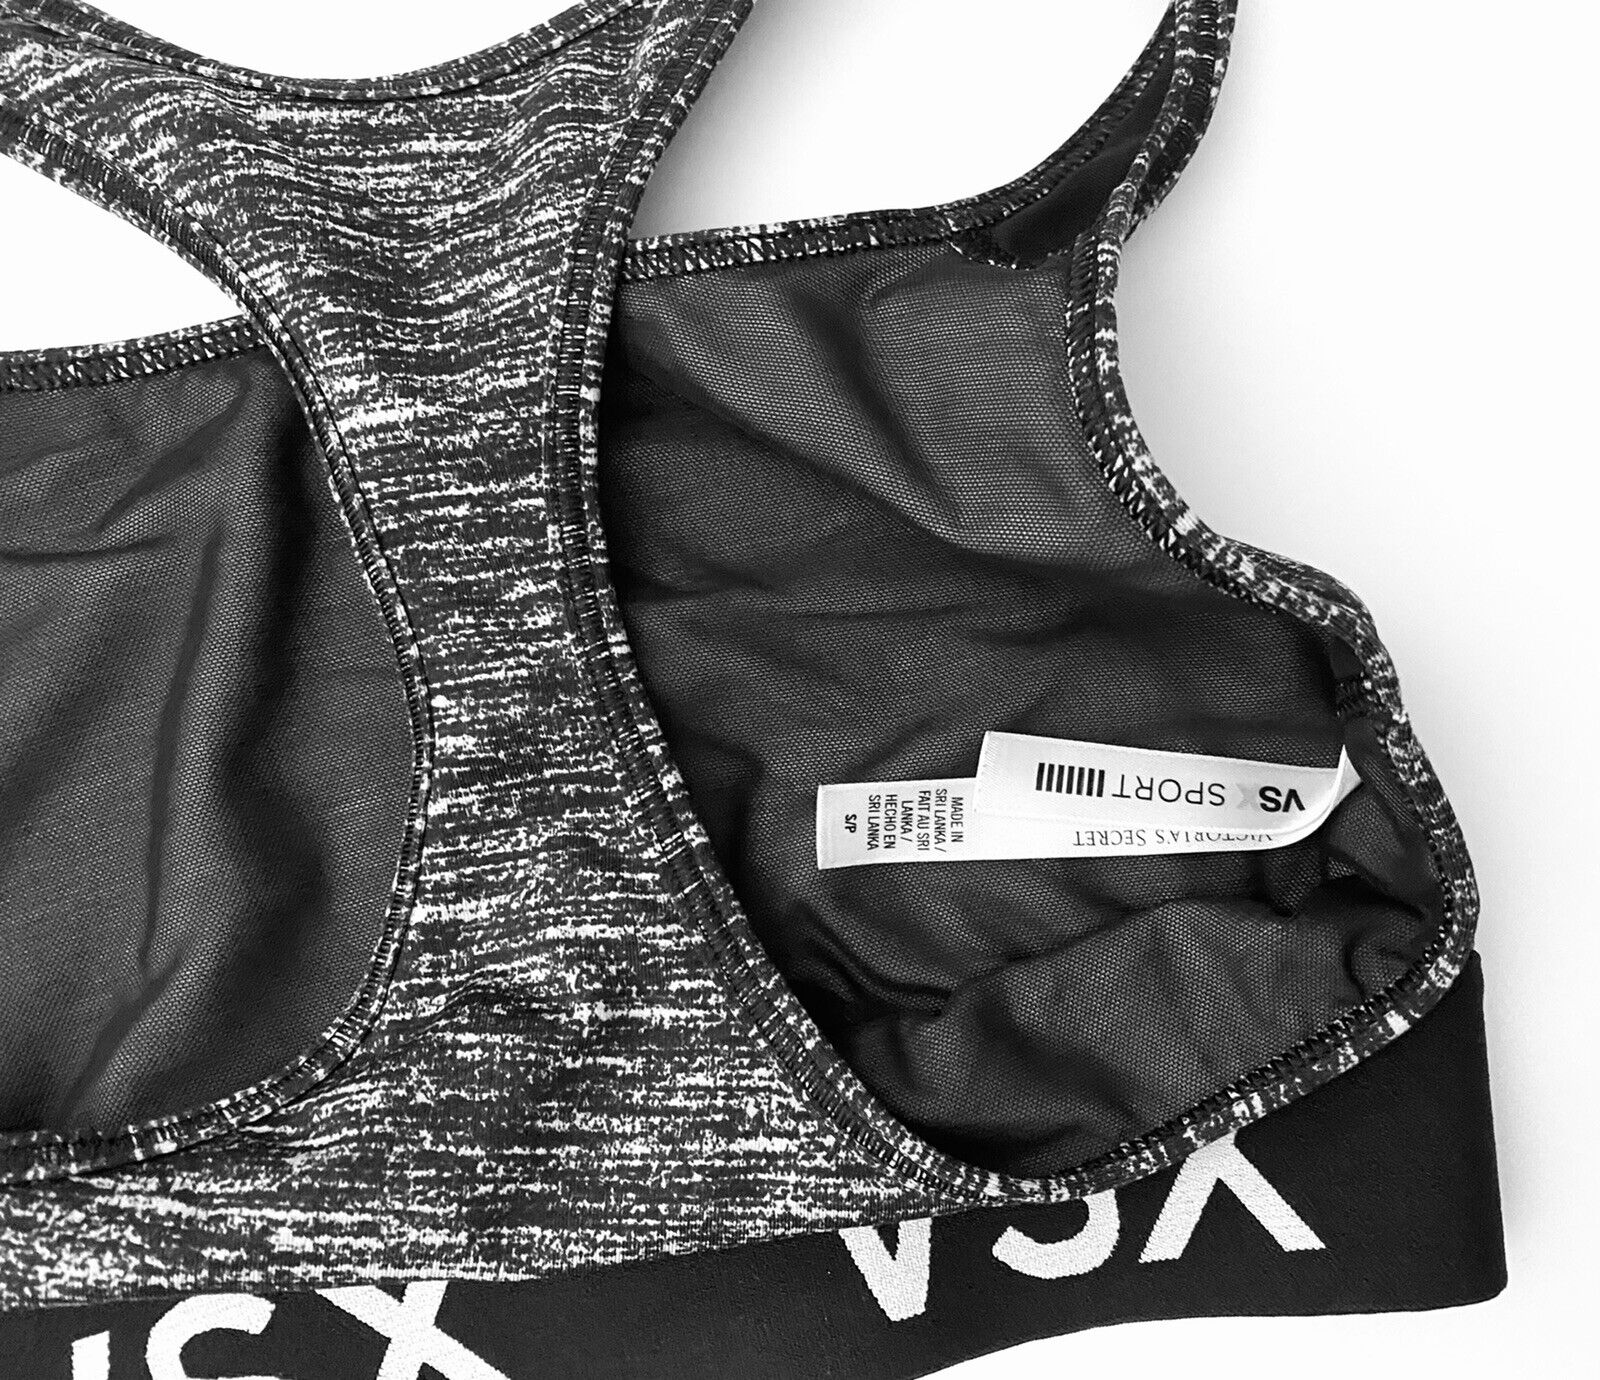 VSX Sport Victoria Secret Gray/Black/White Sports bra size S/P EUC